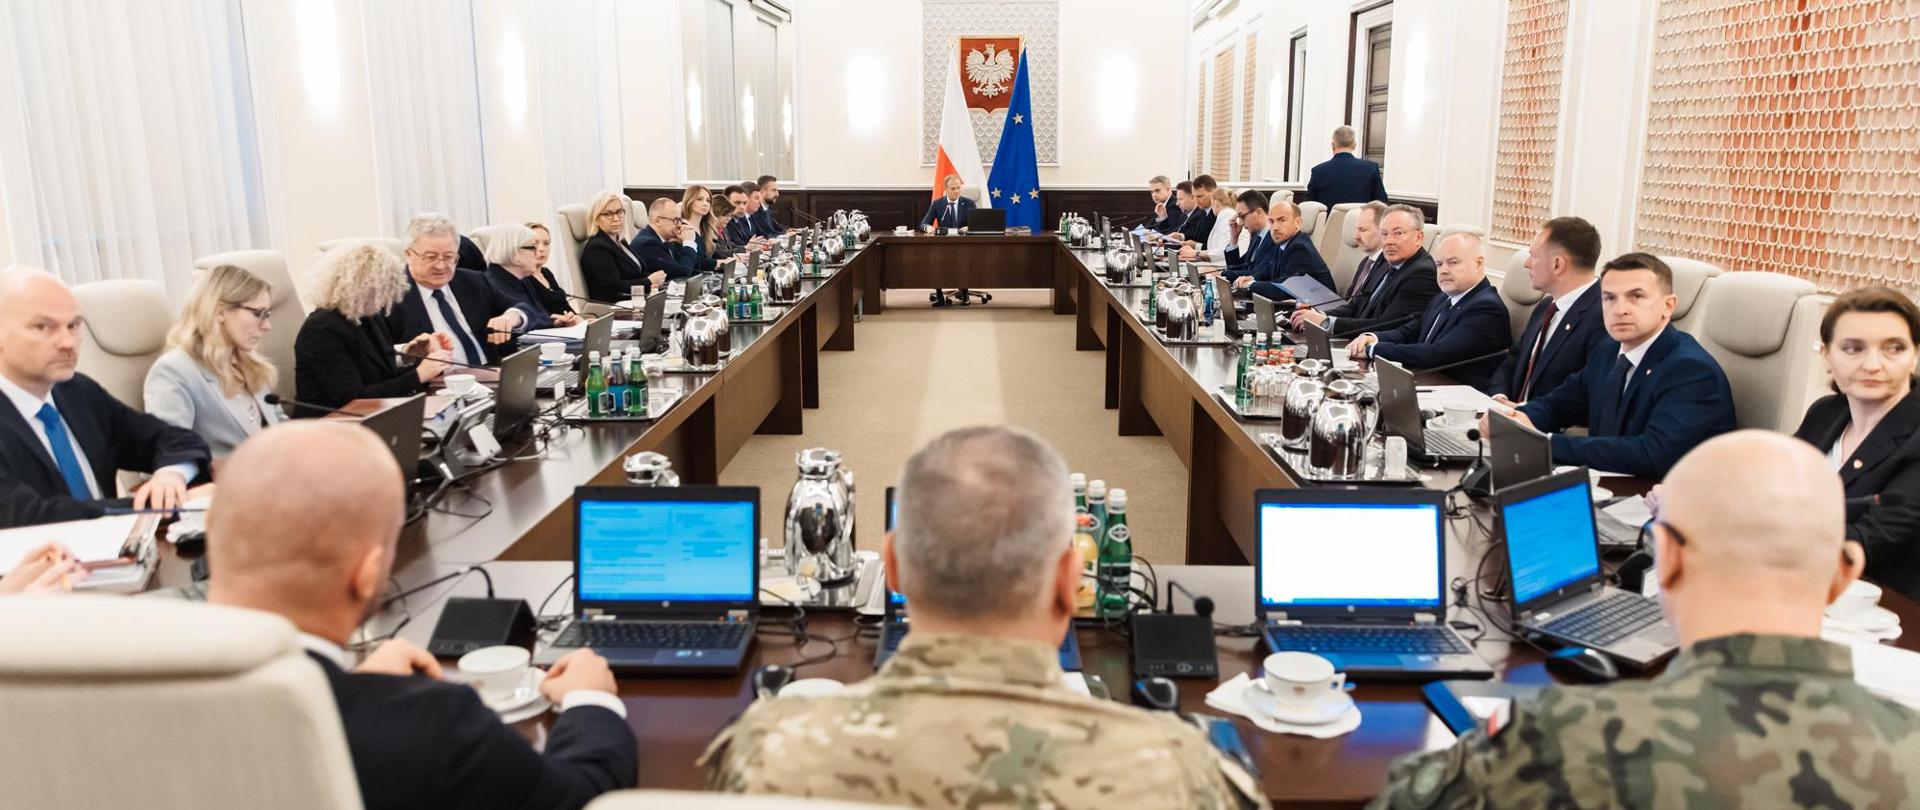 Posiedzenie Rady Ministrów pod przewodnictwem Premiera Donalda Tuska.